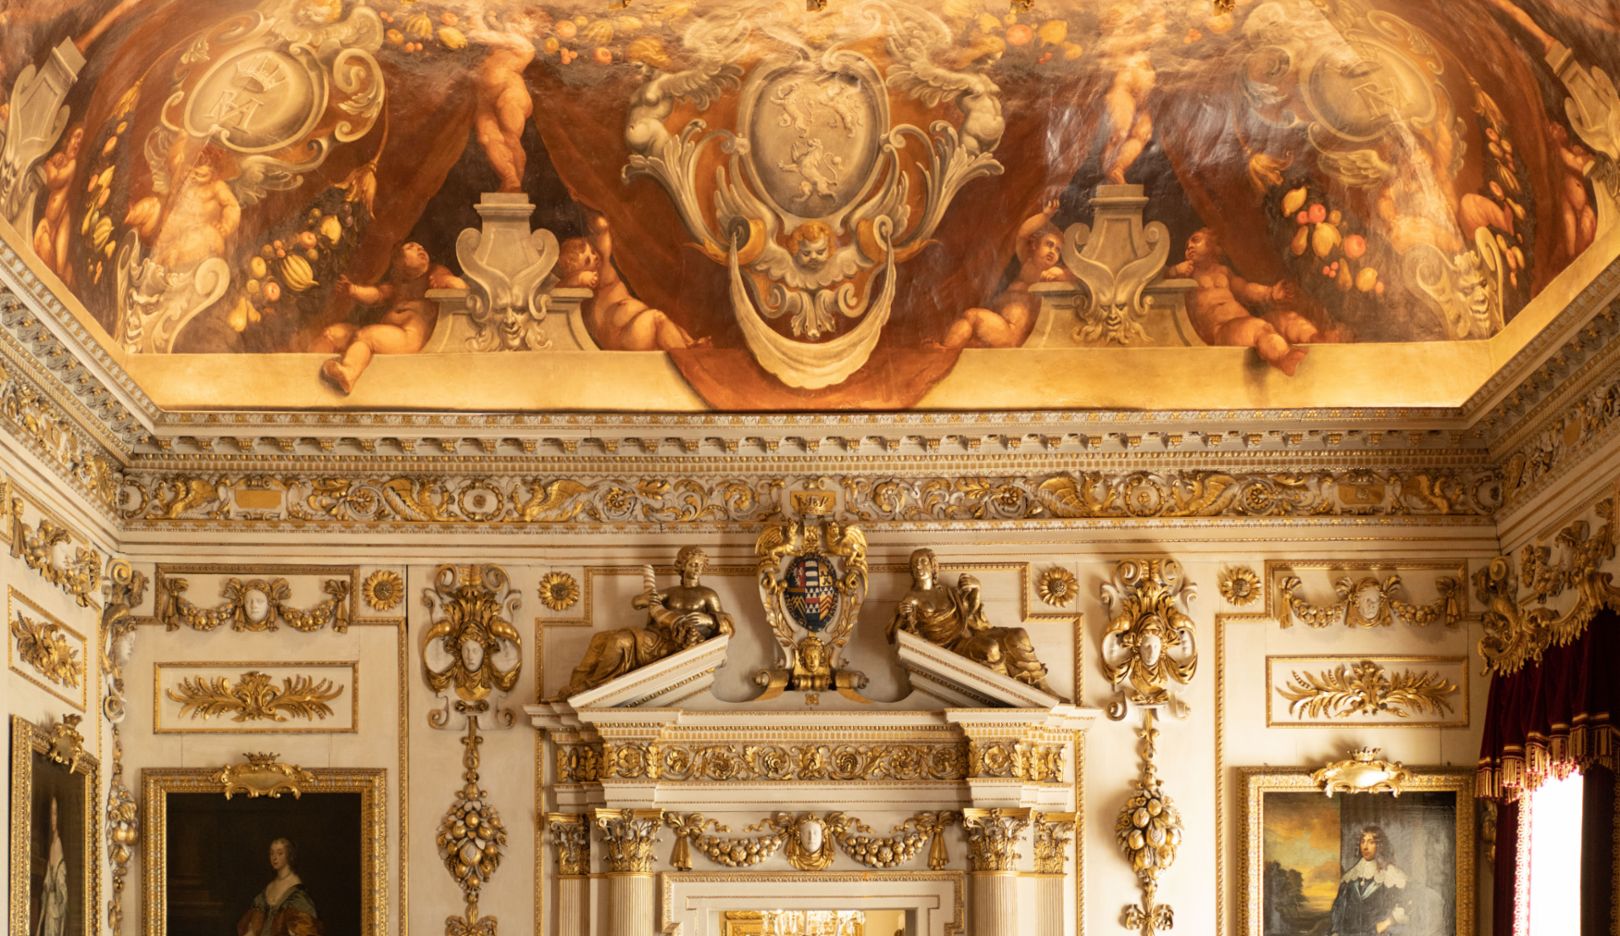 Conservazione dei monumenti: per mantenere gli affreschi del soffitto, Herbert deve ricorrere alla rara competenza di artigiani esperti.